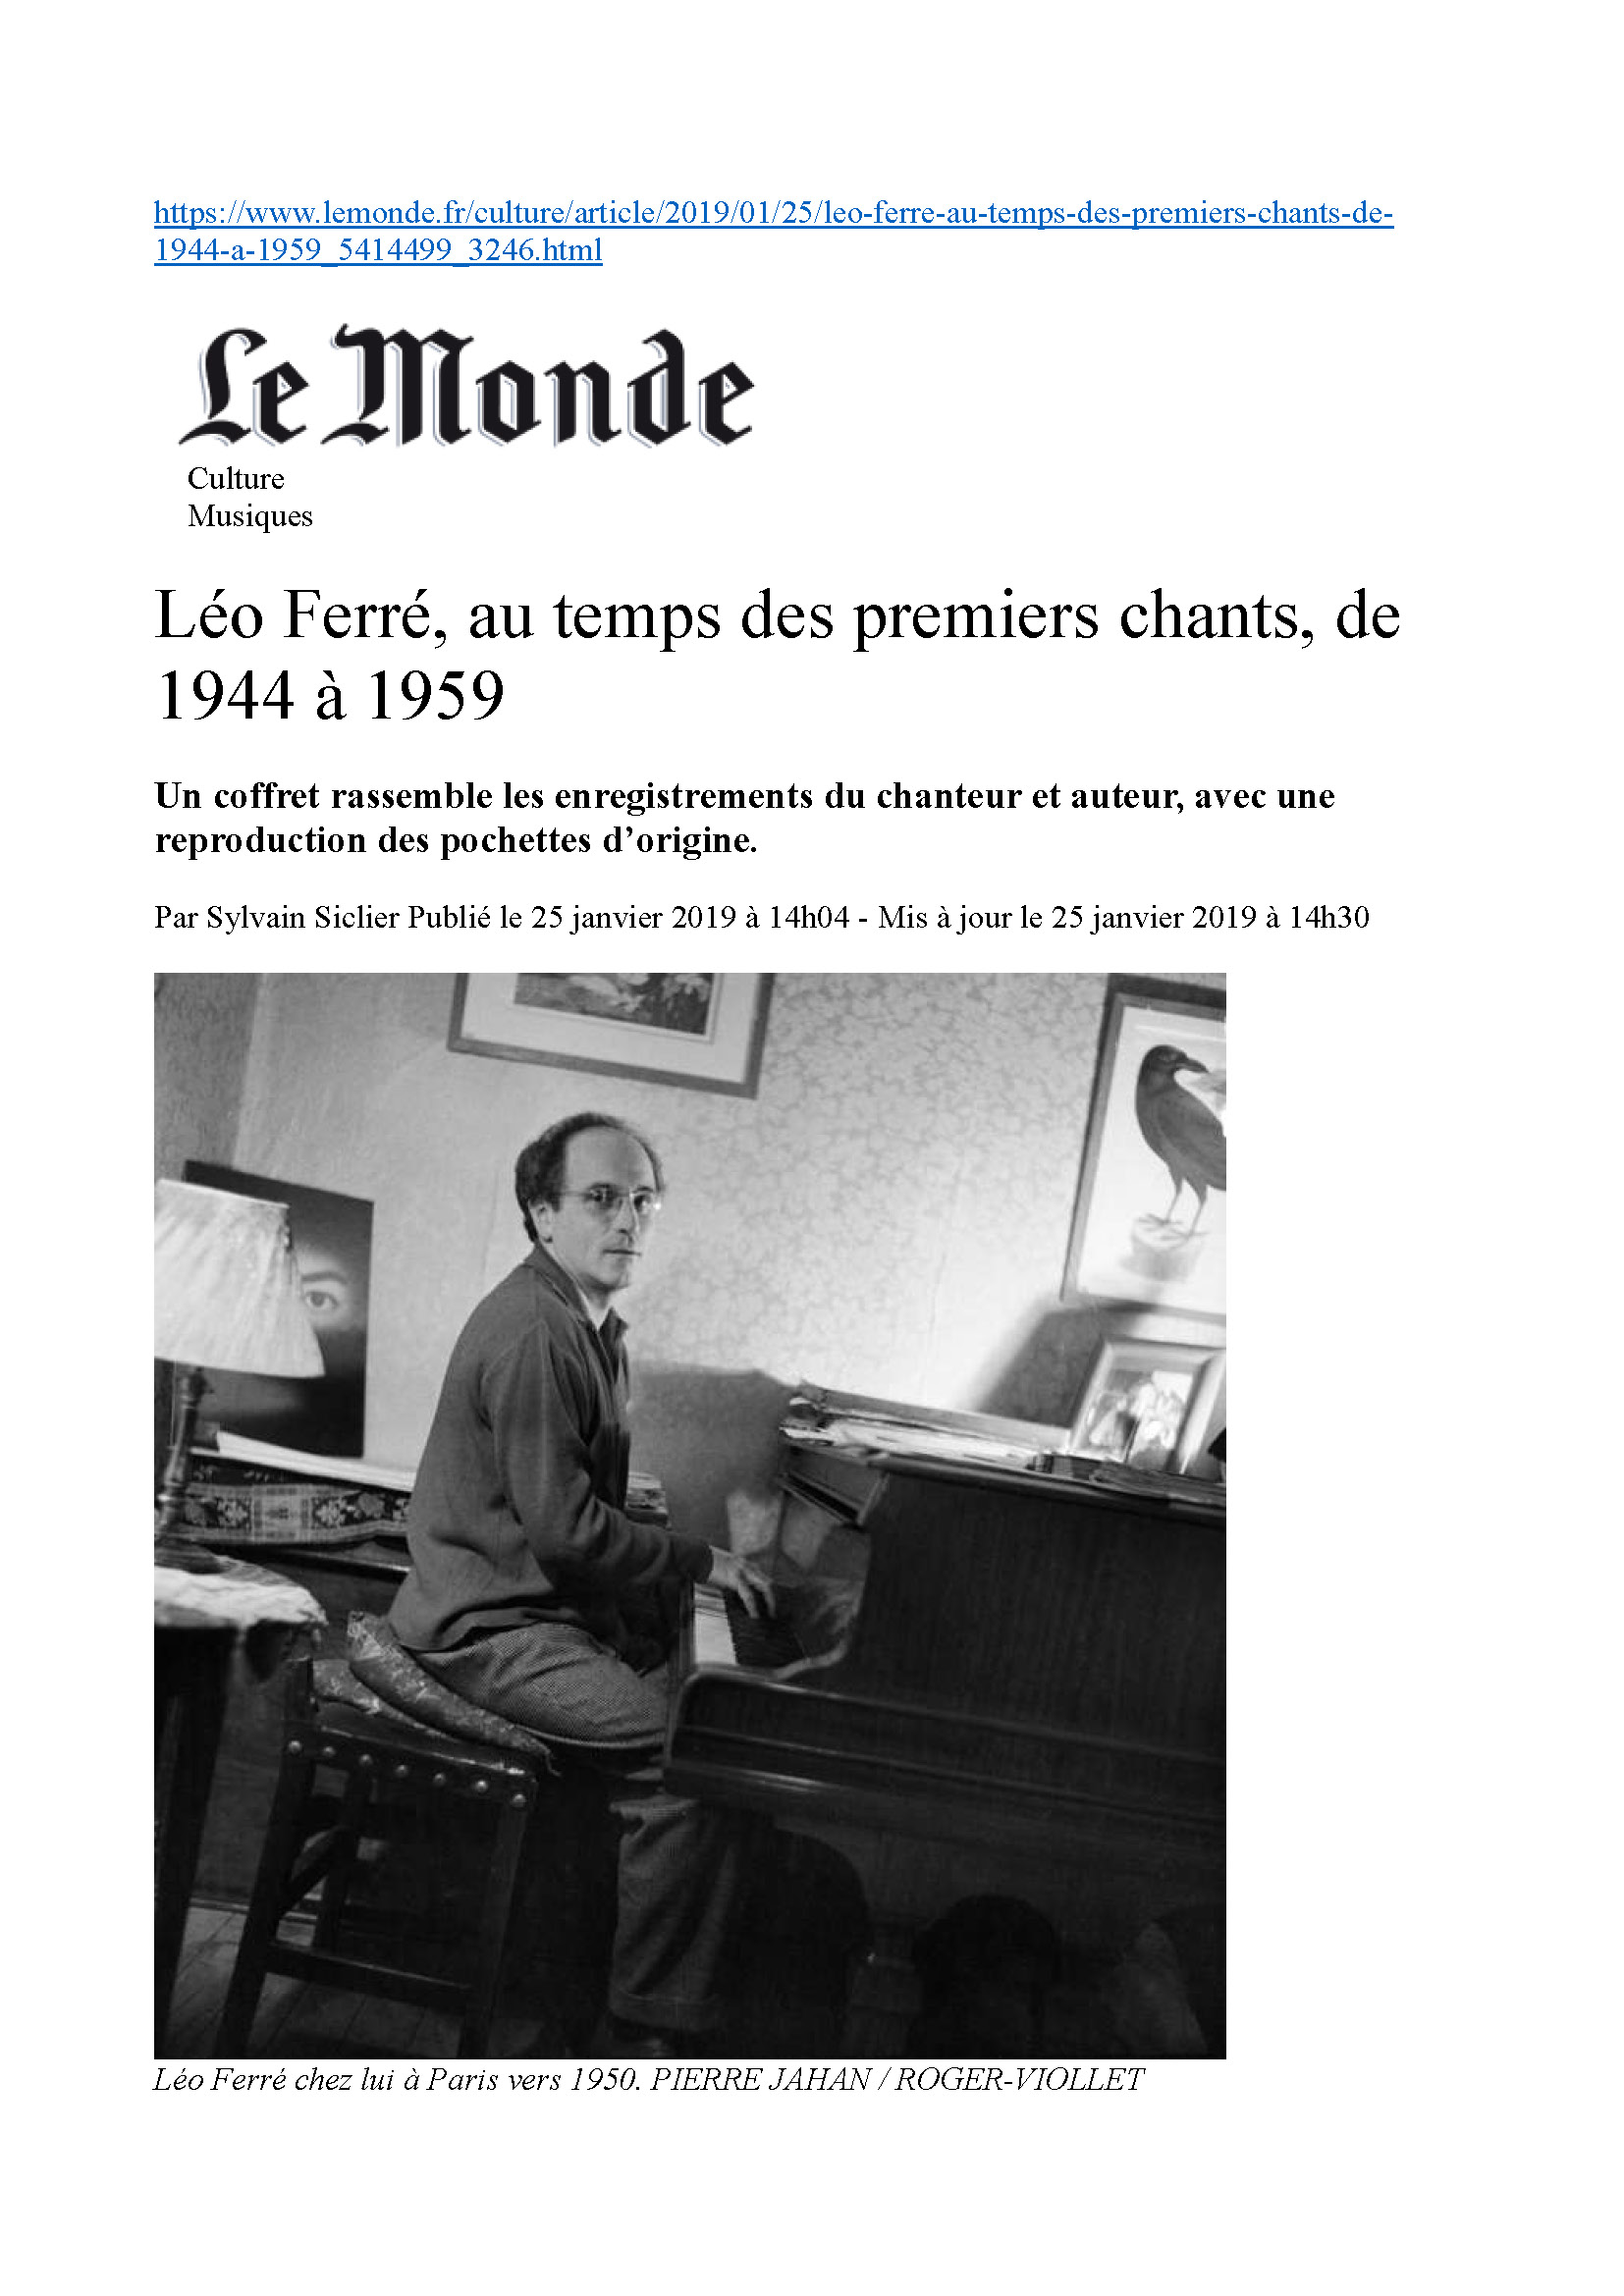  25/01/2019 Le Monde Léo Ferré au temps des premiers chants